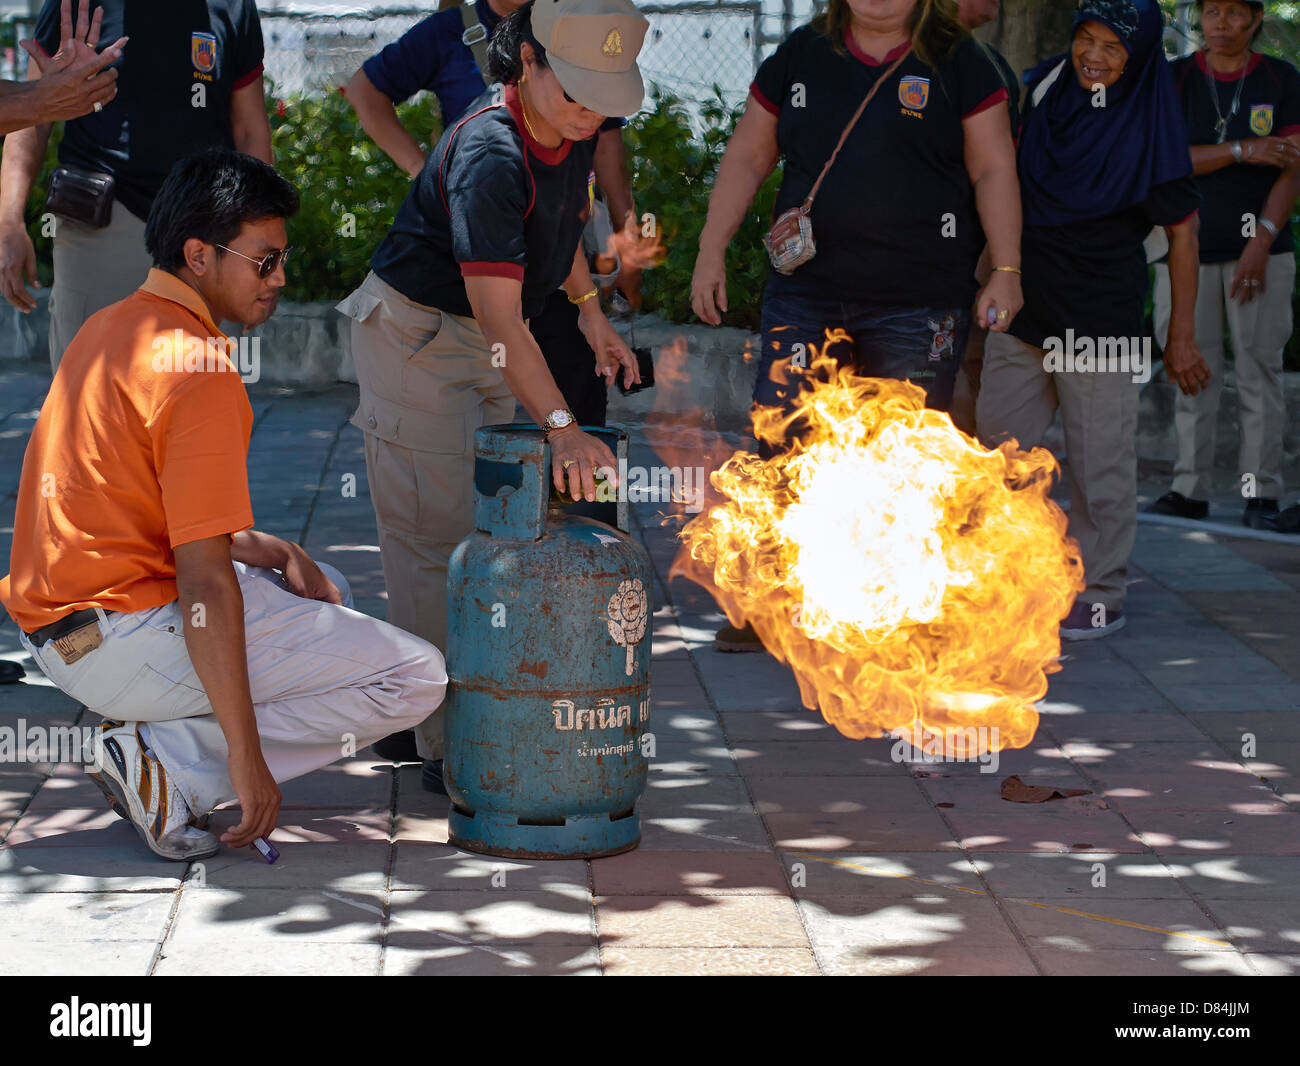 Formation sur la sécurité incendie des appareils domestiques.un agent des incendies de Thaïlande démontrant la méthode sûre pour éteindre la flamme d'une bouteille de gaz propane. Banque D'Images